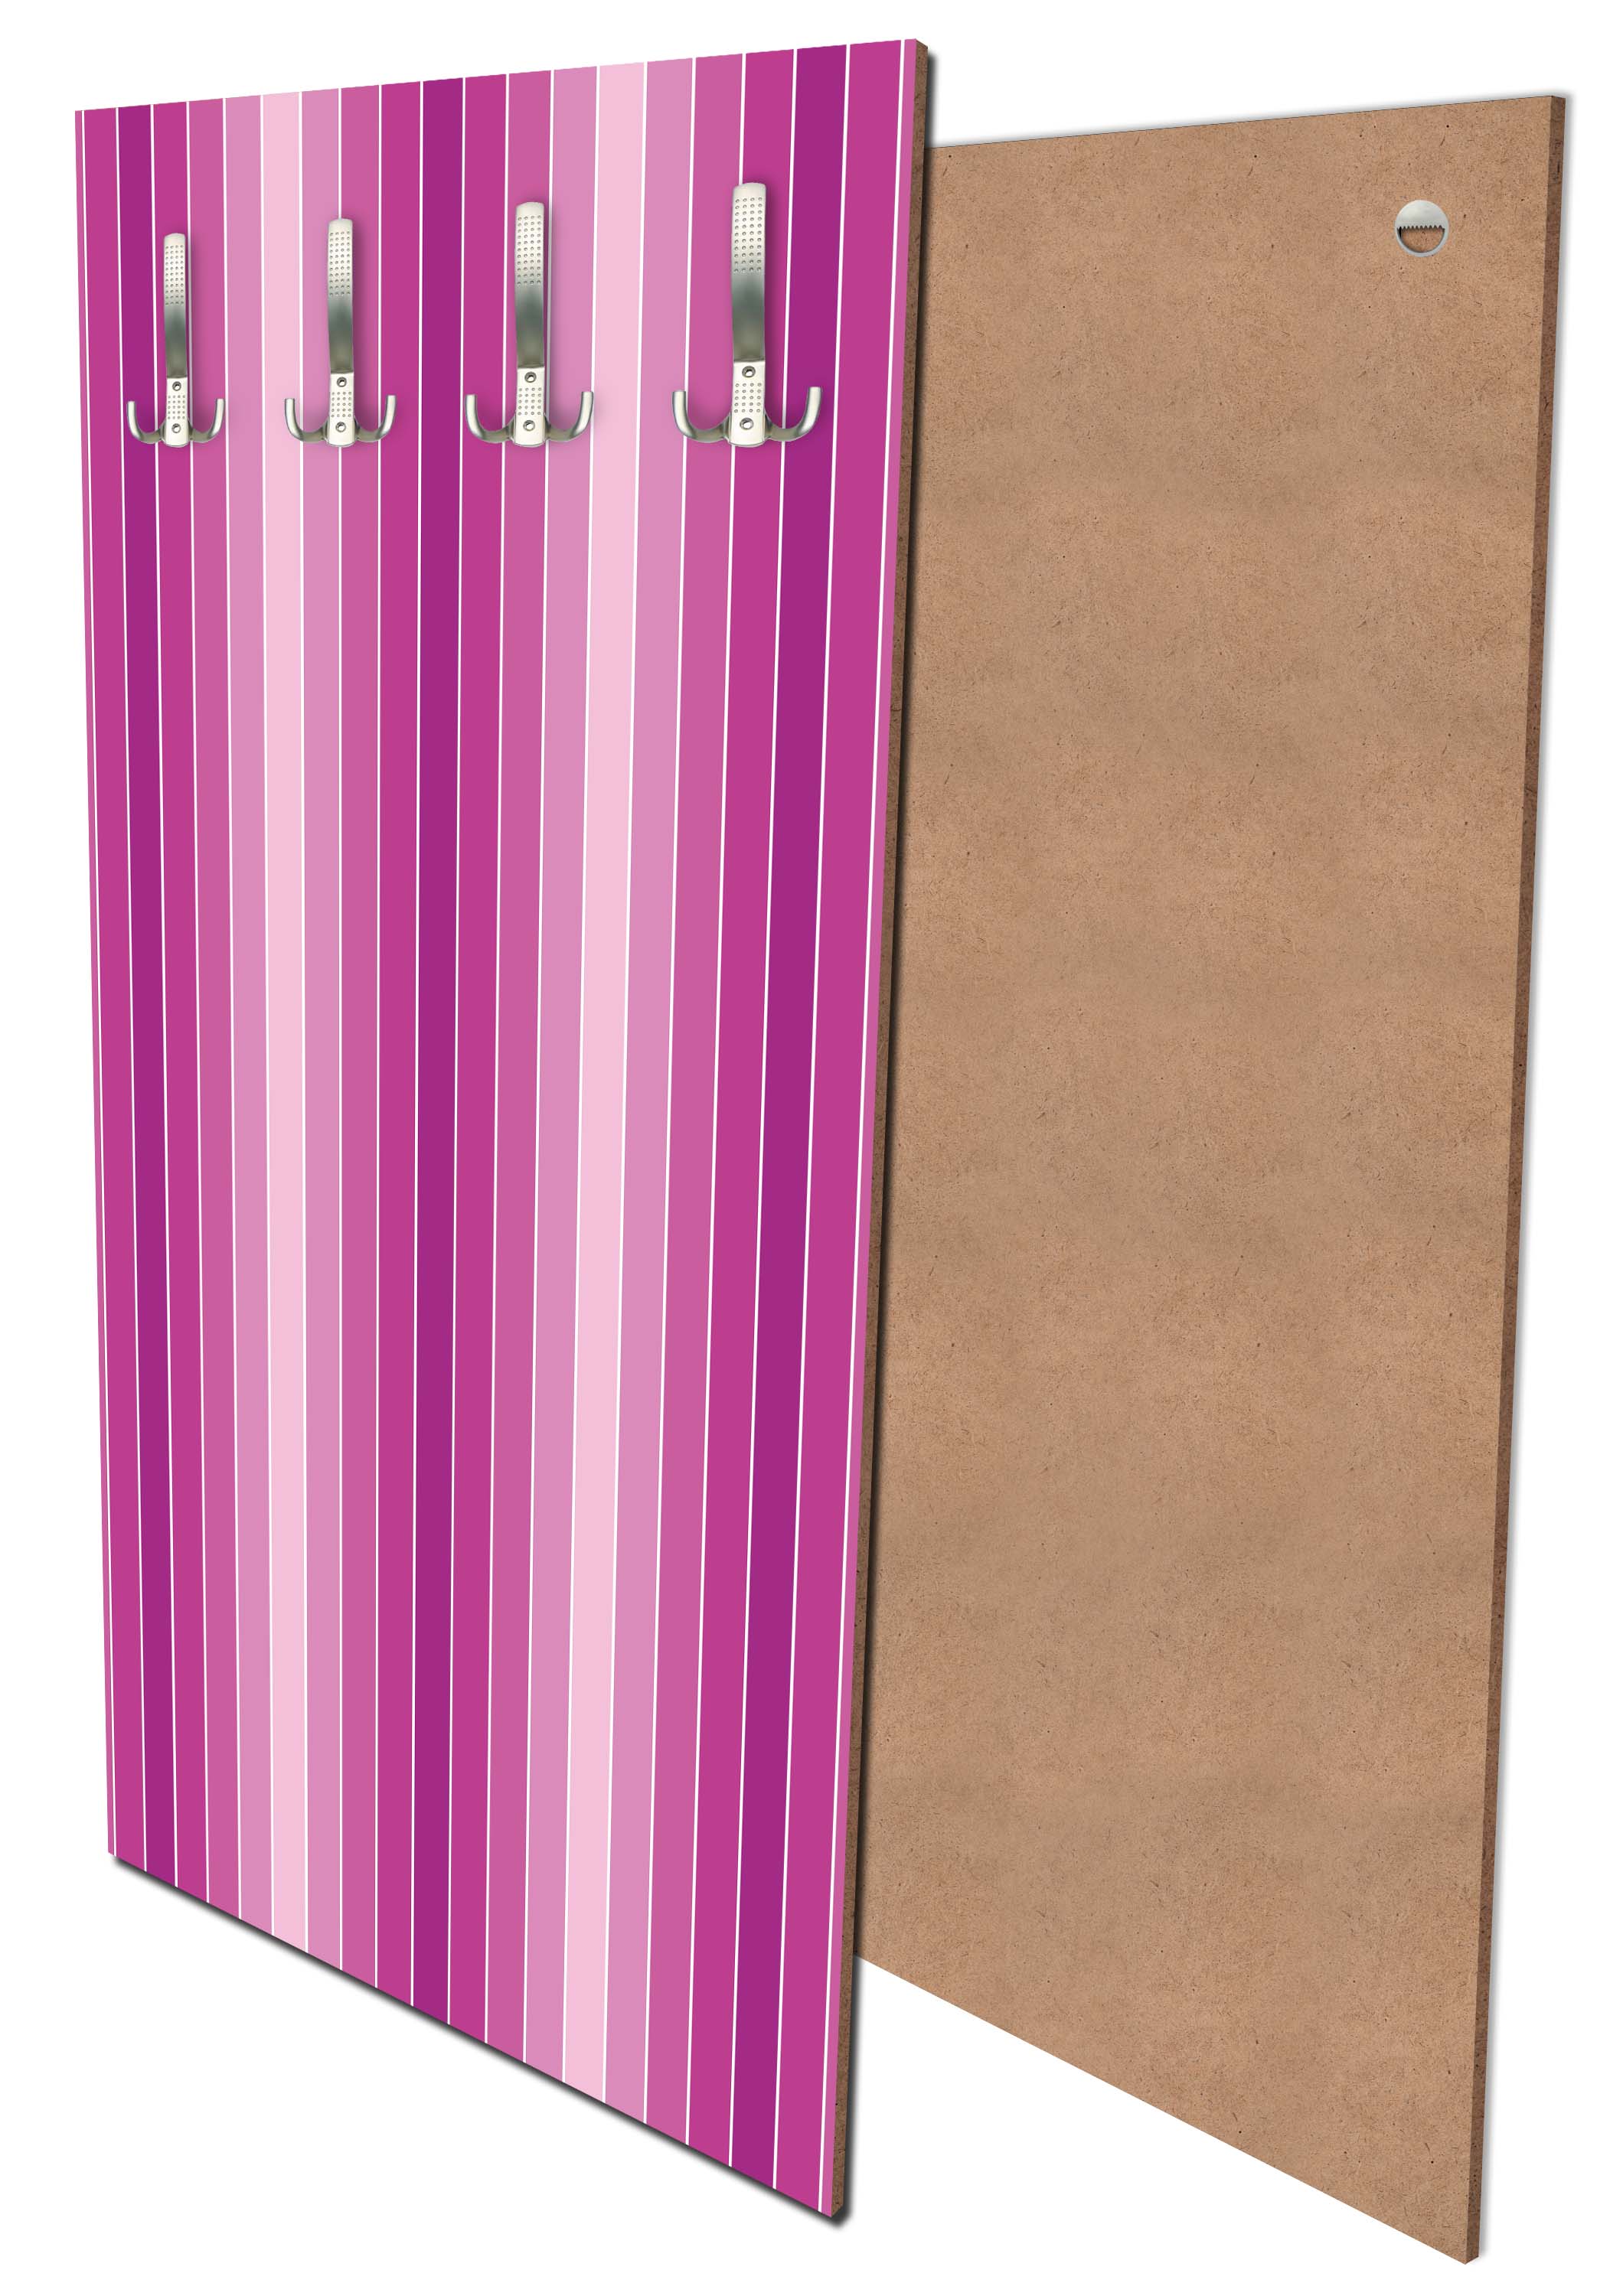 Garderobe Pink Muster M0096 entdecken - Bild 1